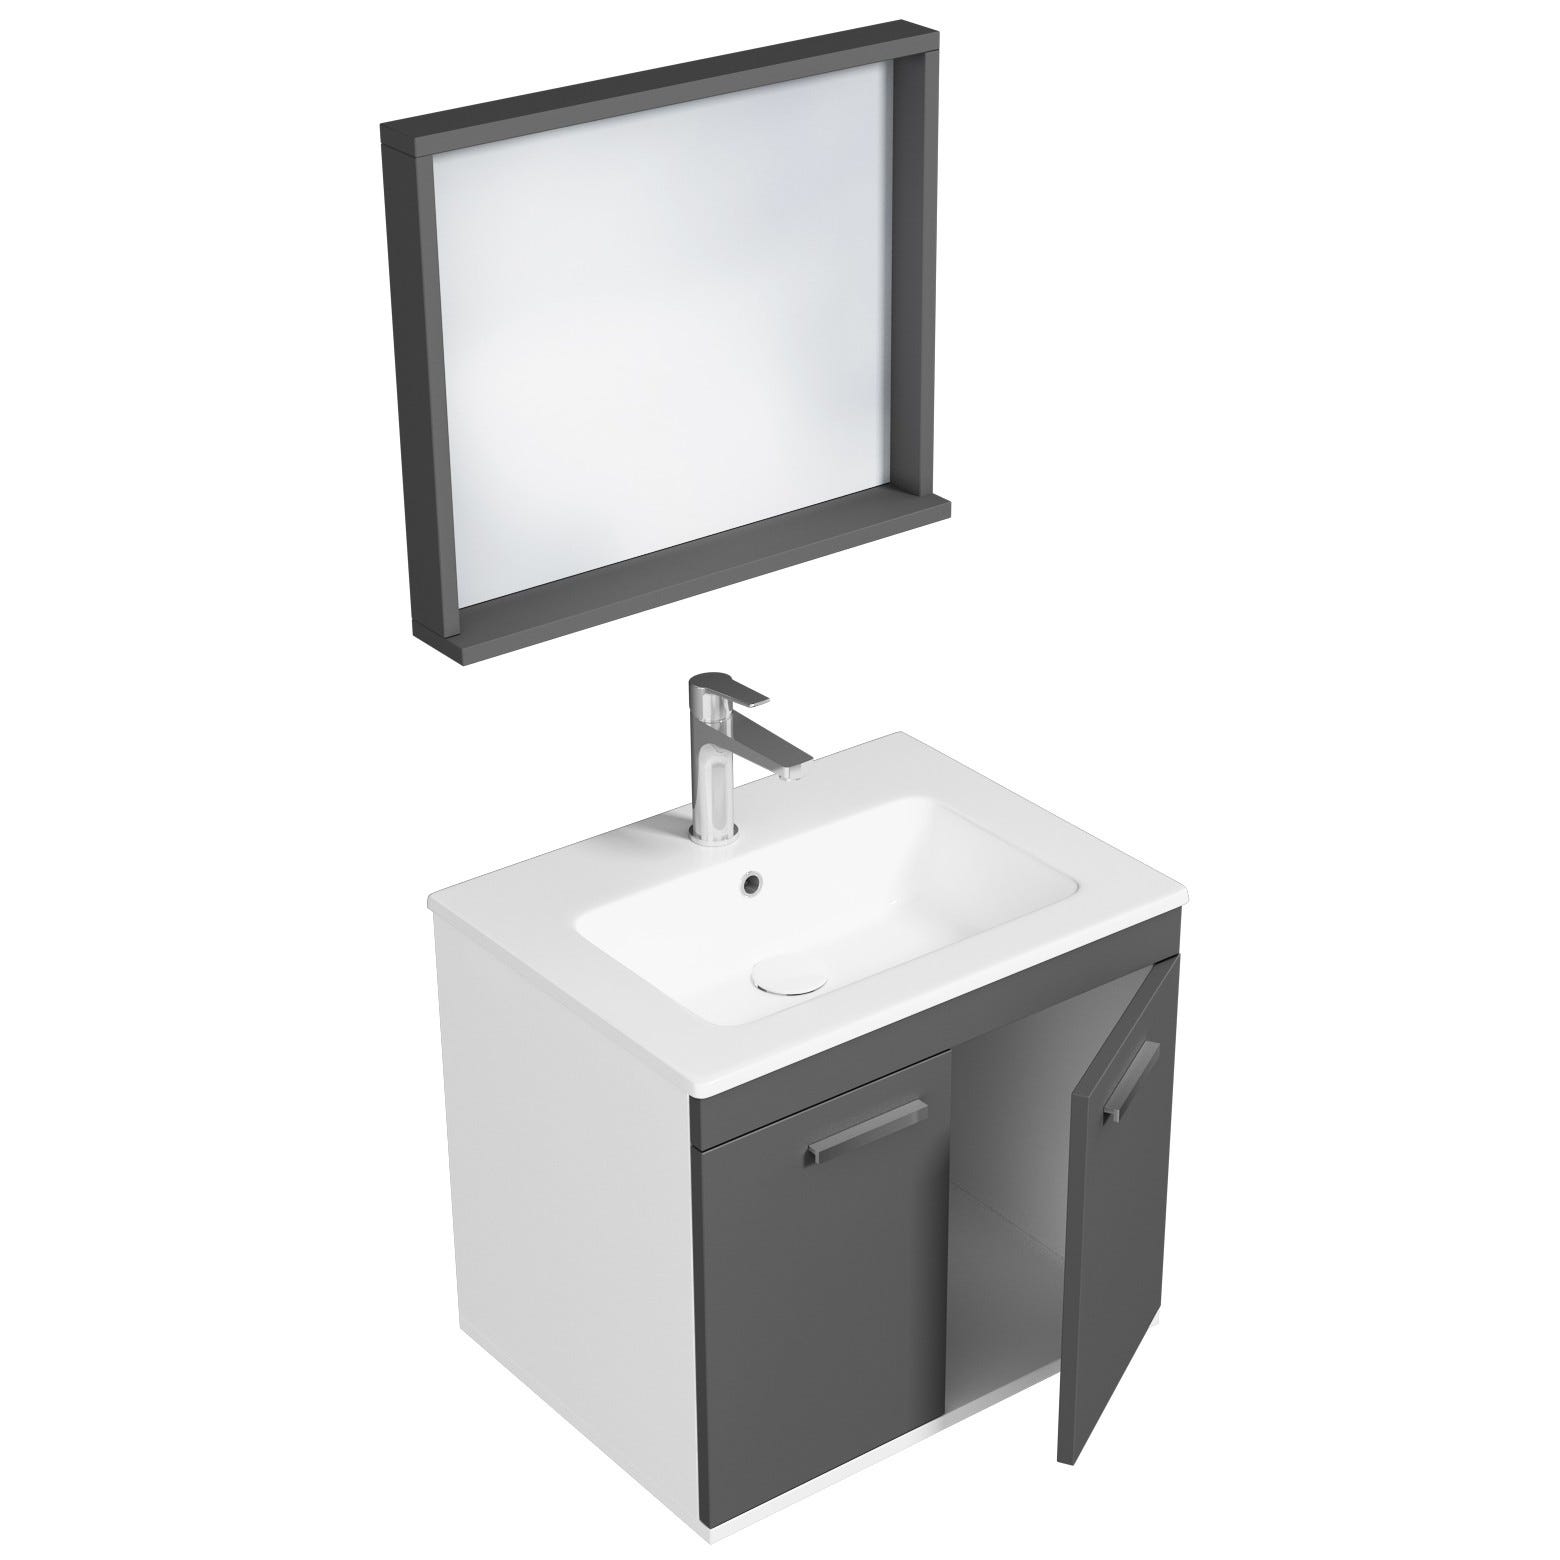 RUBITE Meuble salle de bain simple vasque 2 portes gris anthracite largeur 60 cm + miroir cadre 1